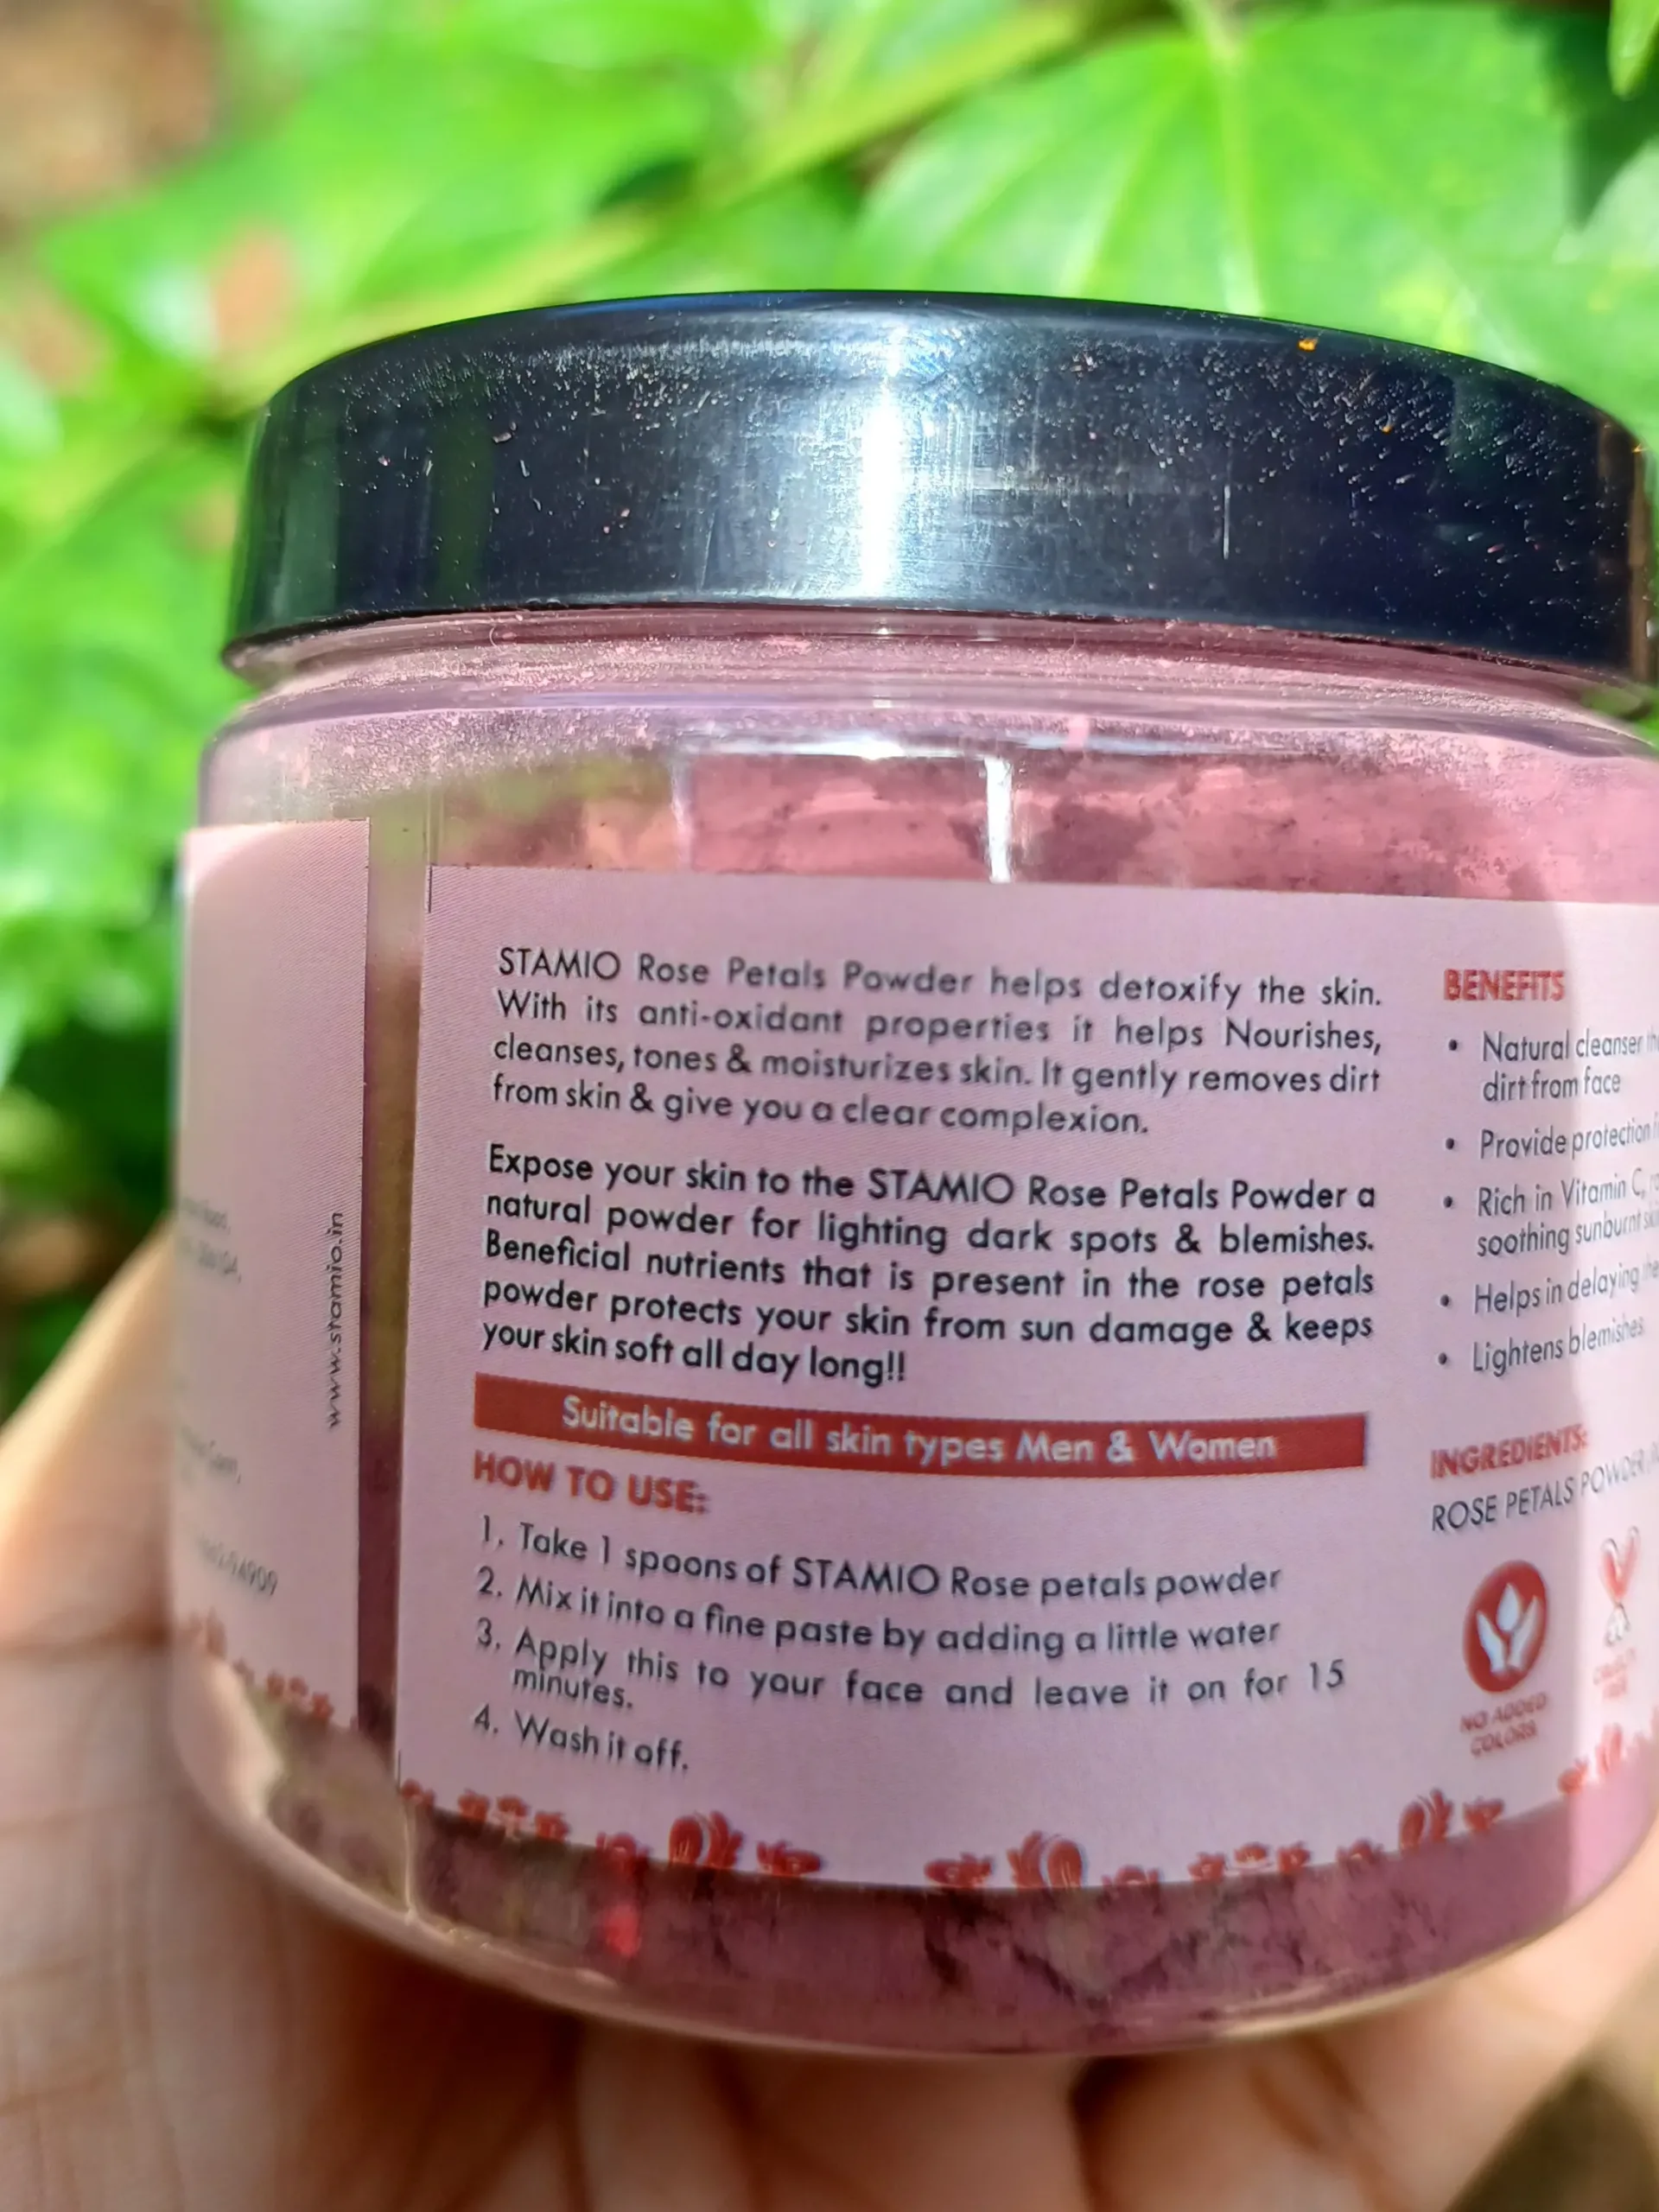 Rose Petal Powder benefits